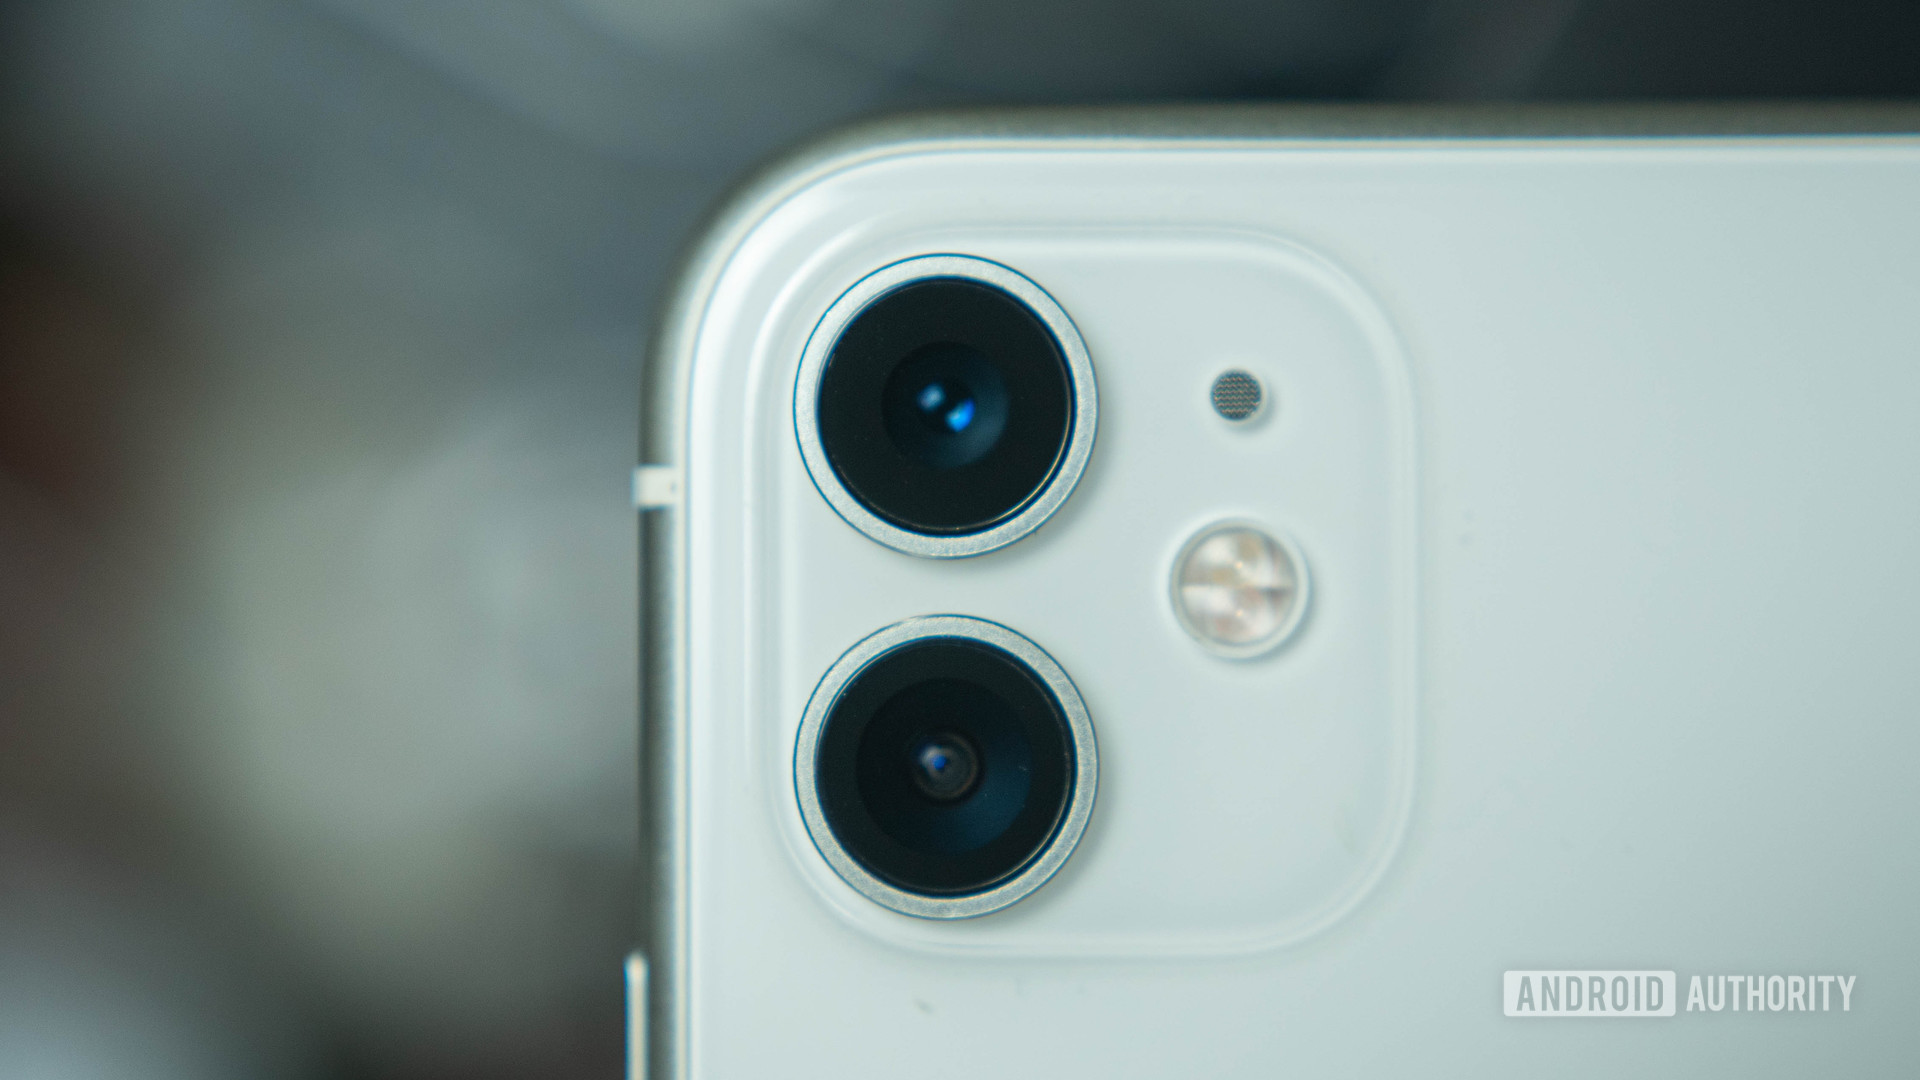 Dual cameras camera module Apple iPhone 11